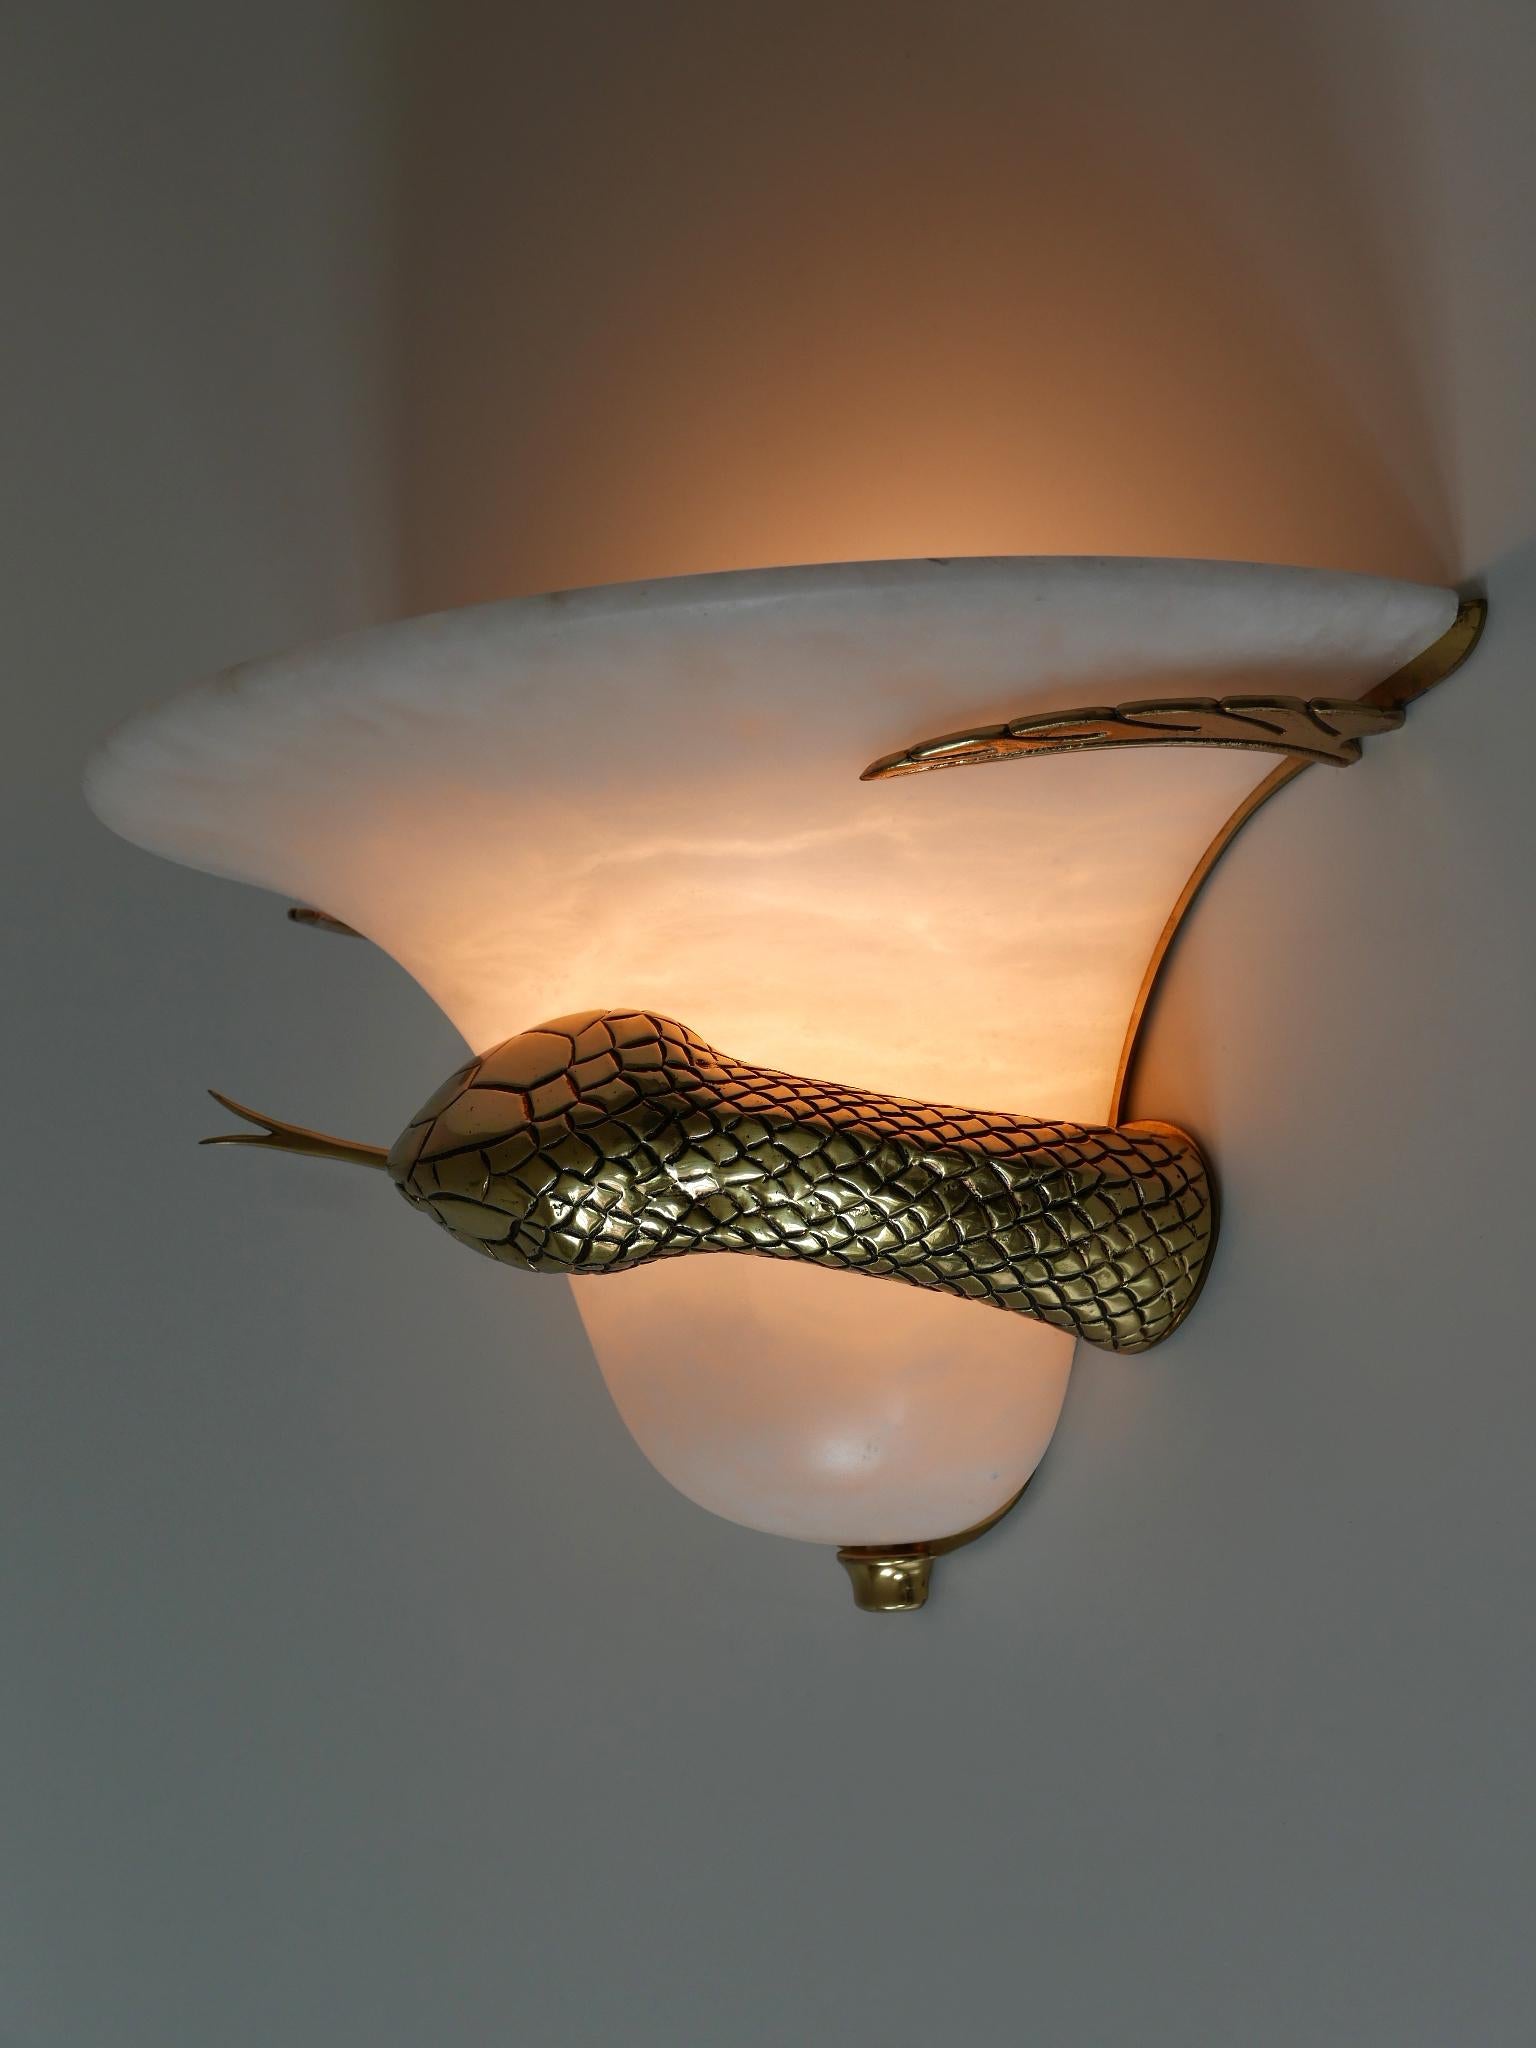 snake light fixture